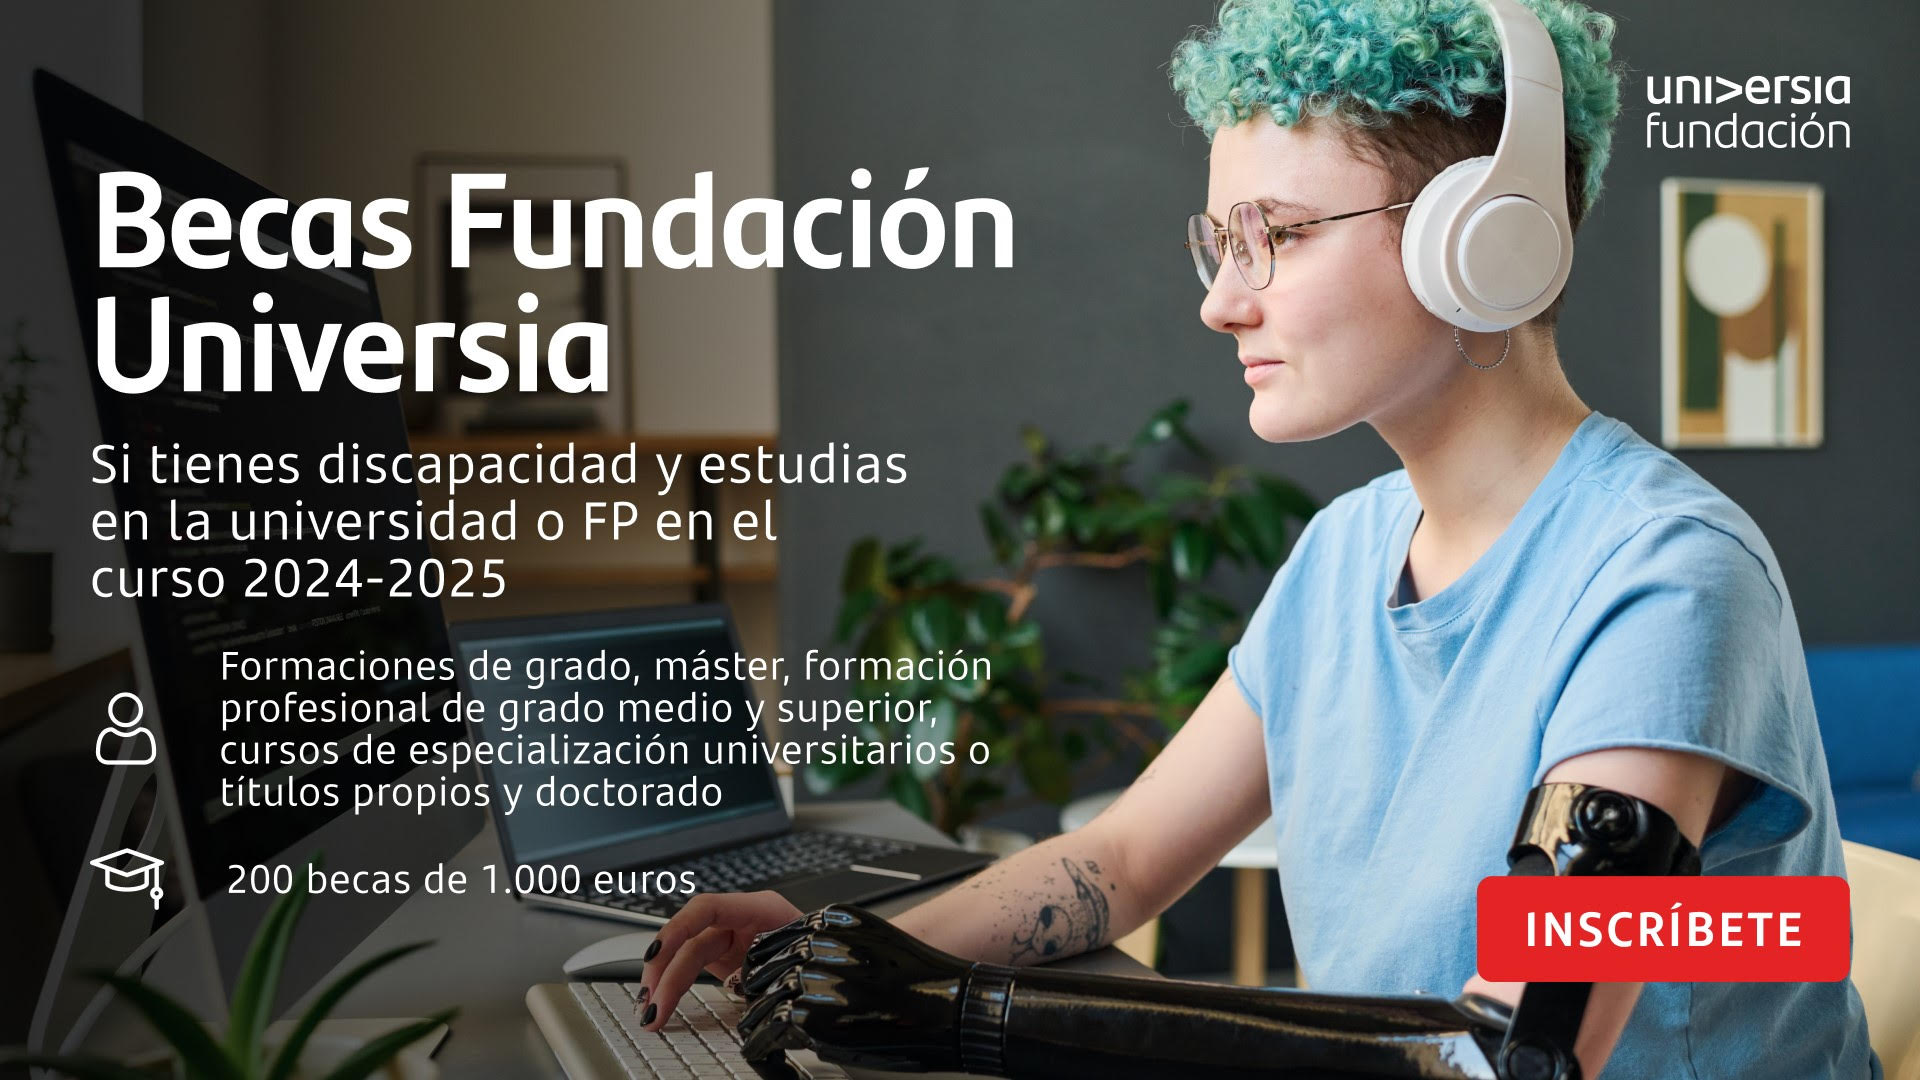 Becas Fundación Universia 2024-2025 para personas con discapacidad